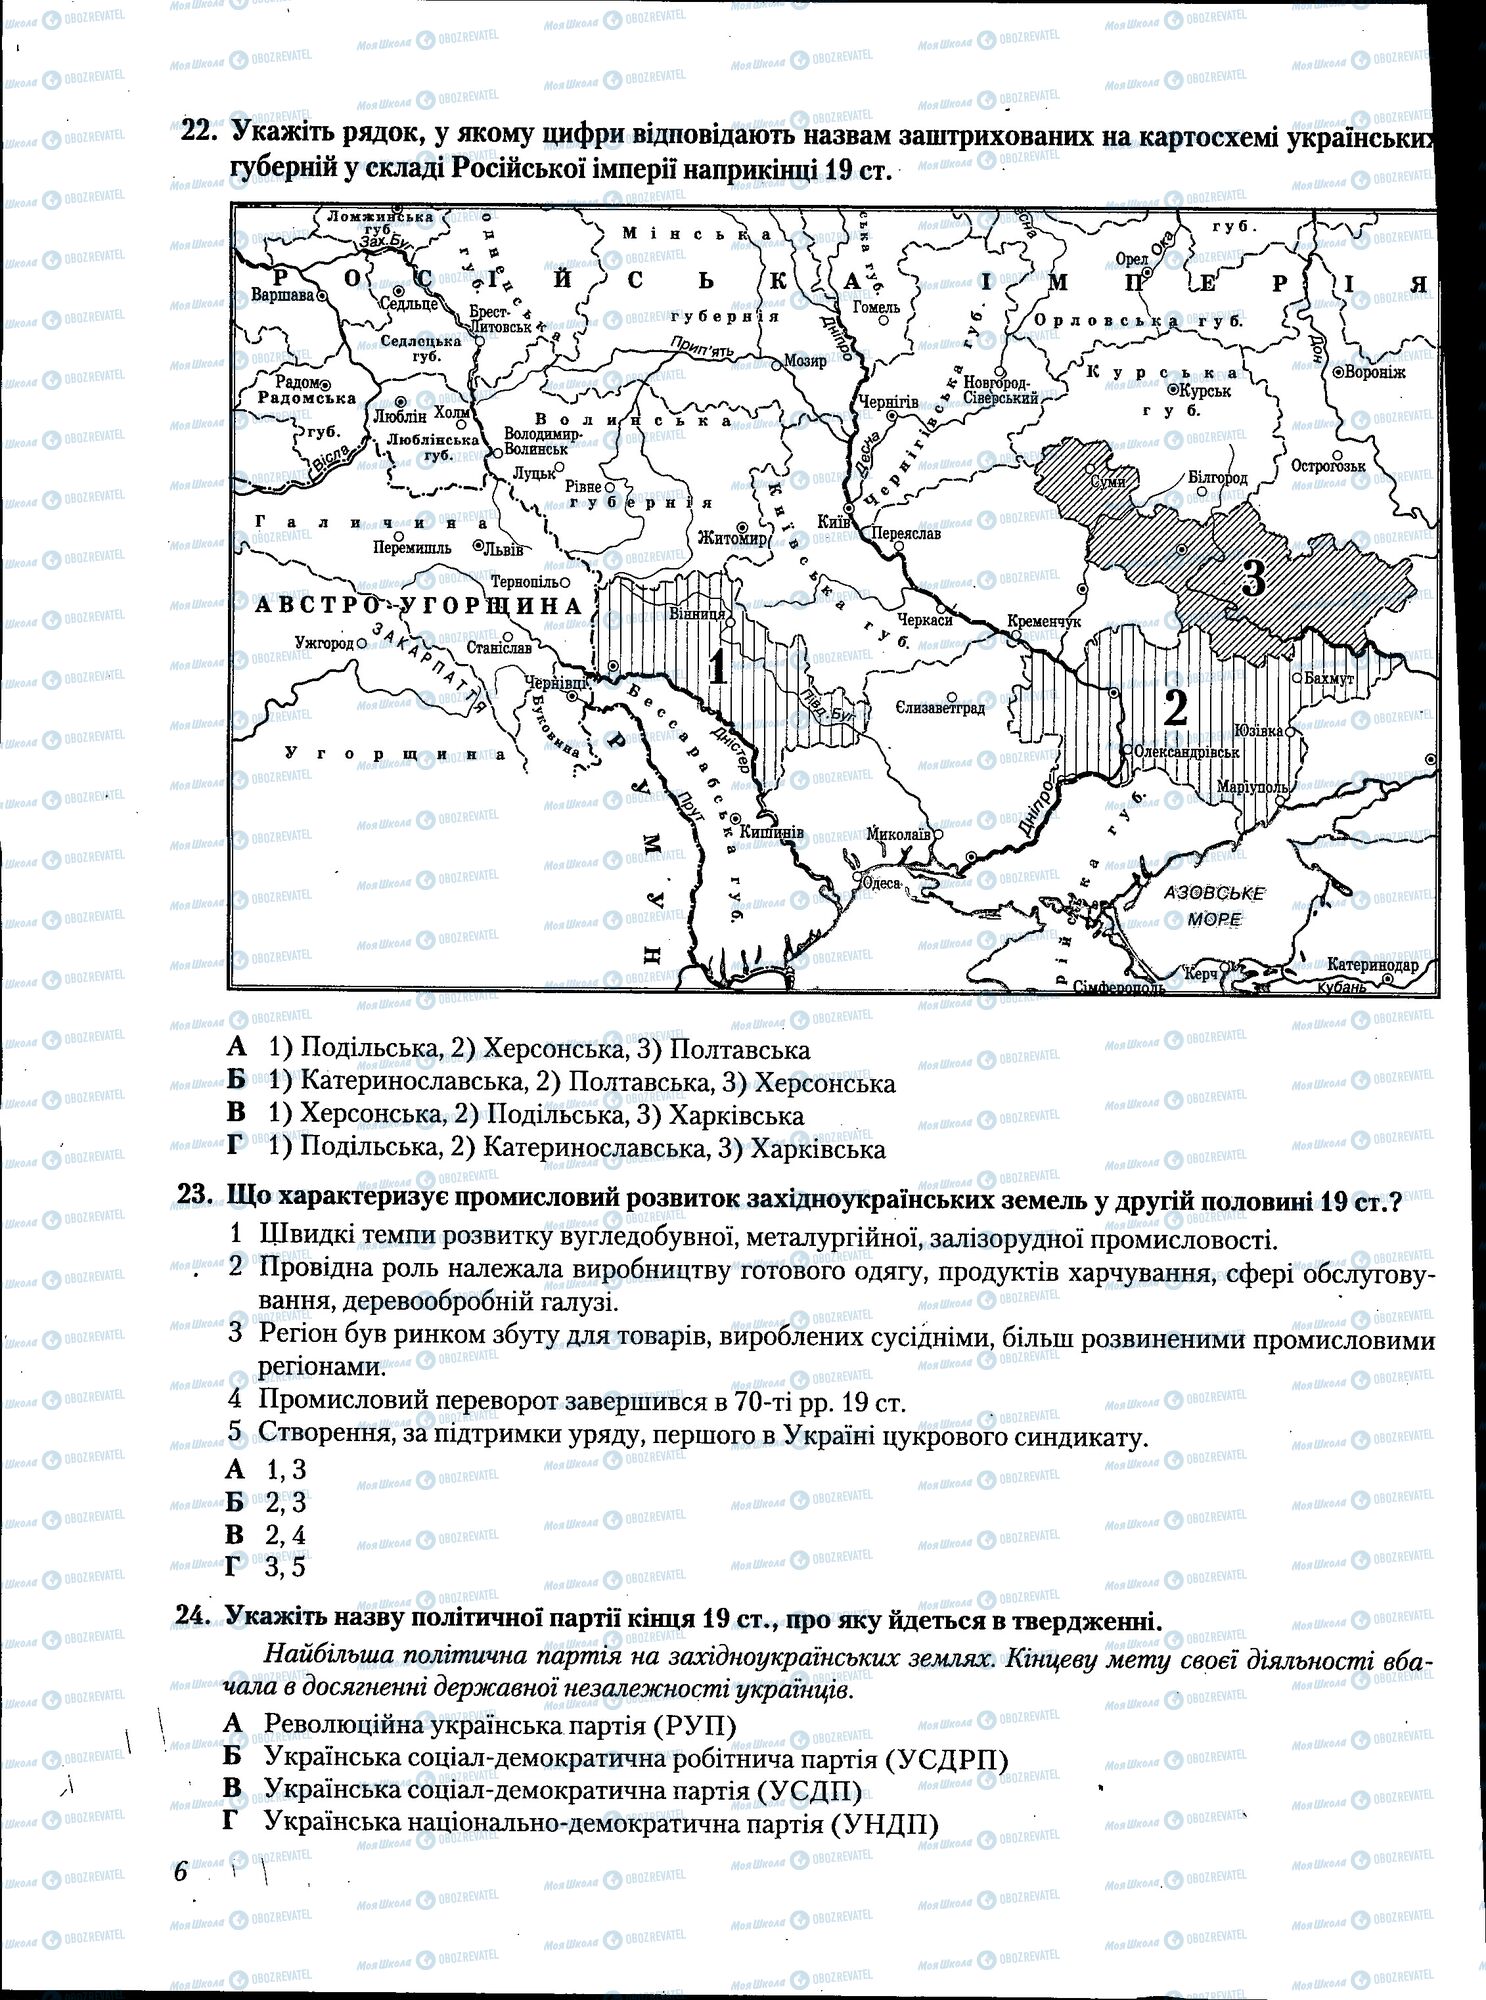 ЗНО История Украины 11 класс страница 006